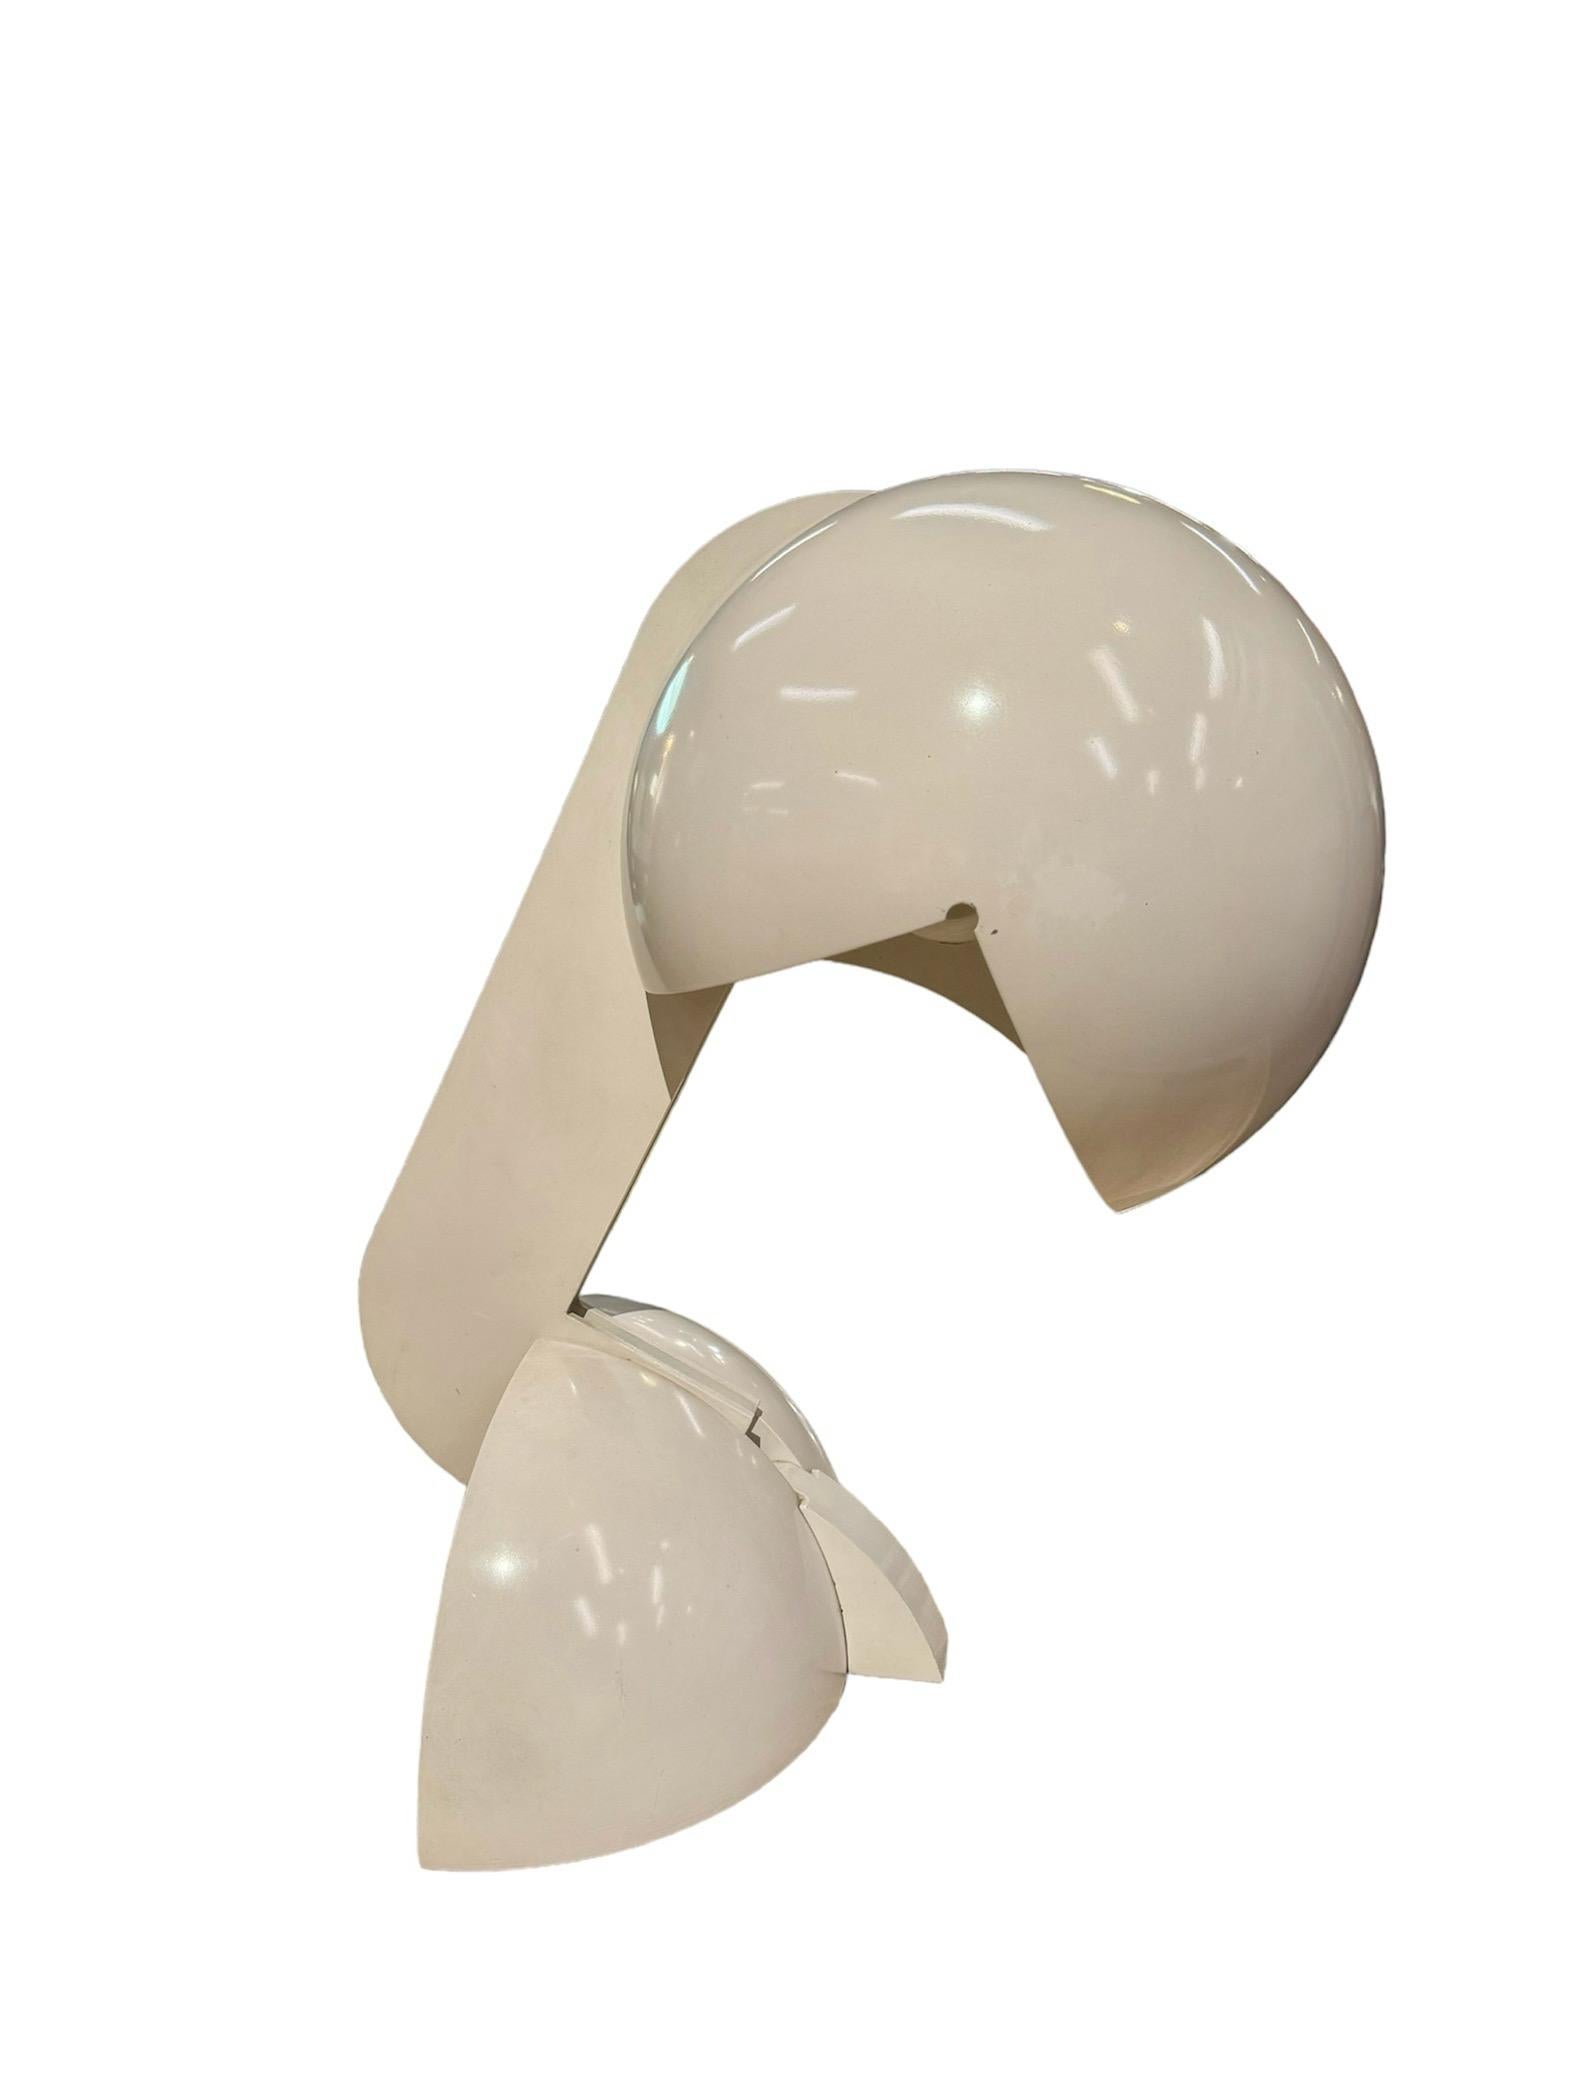 La lampe Ruspa, conçue par Gae Aulenti en 1967, est considérée comme un chef-d'œuvre en raison de sa forme sculpturale et du caractère presque industriel de ses composants, qui rappellent les machines. La lampe est dotée d'un bras central mobile qui